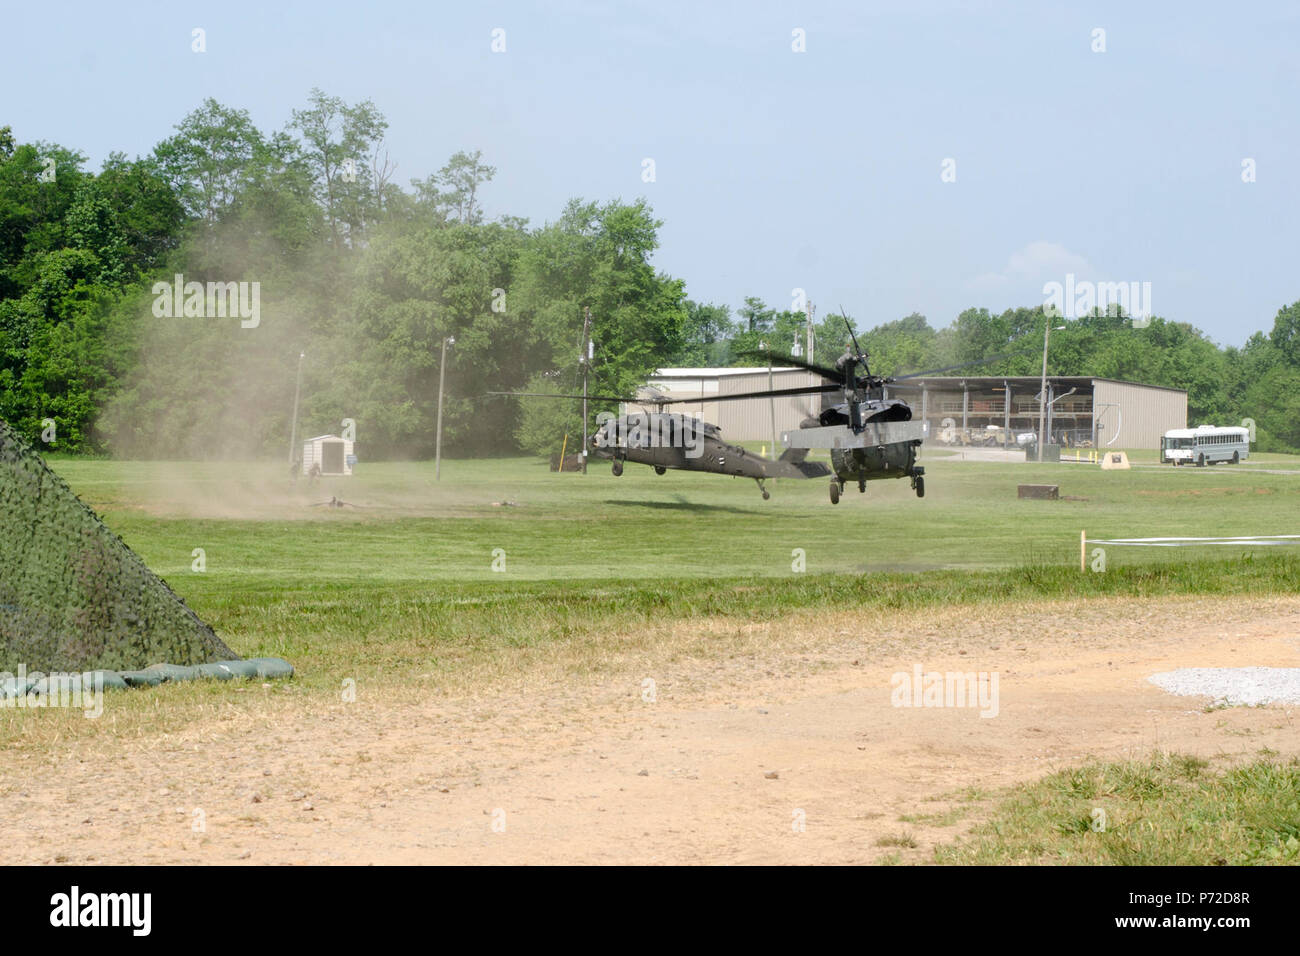 Zwei UH-60 Black Hawk Hubschrauber bereiten Sie im Rahmen einer Übung 11. Mai 2017, in Fort Campbell, Kentucky zu landen. Die Hubschrauber waren Teil eines Szenarios für das Feld Fütterung Teil des Programms Philip A. Connelly. Soldaten, E Company, 6. Bataillon, 101. General Support Aviation Battalion, 101st Combat Aviation Brigade, 101st Airborne Division, gewann die Division im März und dann nahm an der Korps-Ebene zugeordnet. Stockfoto